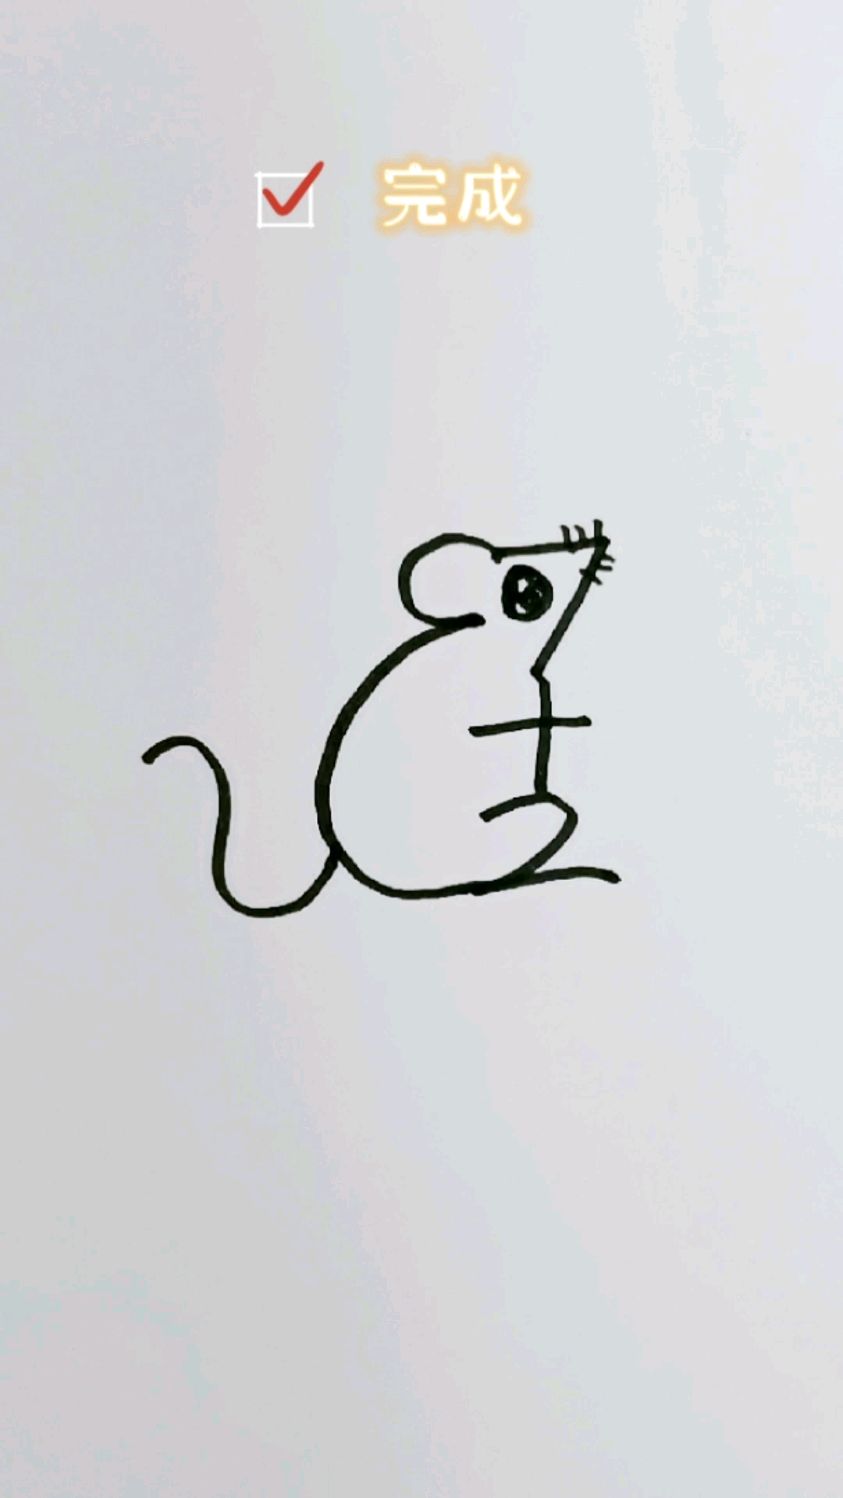 7+2老鼠简笔画 小动物图片